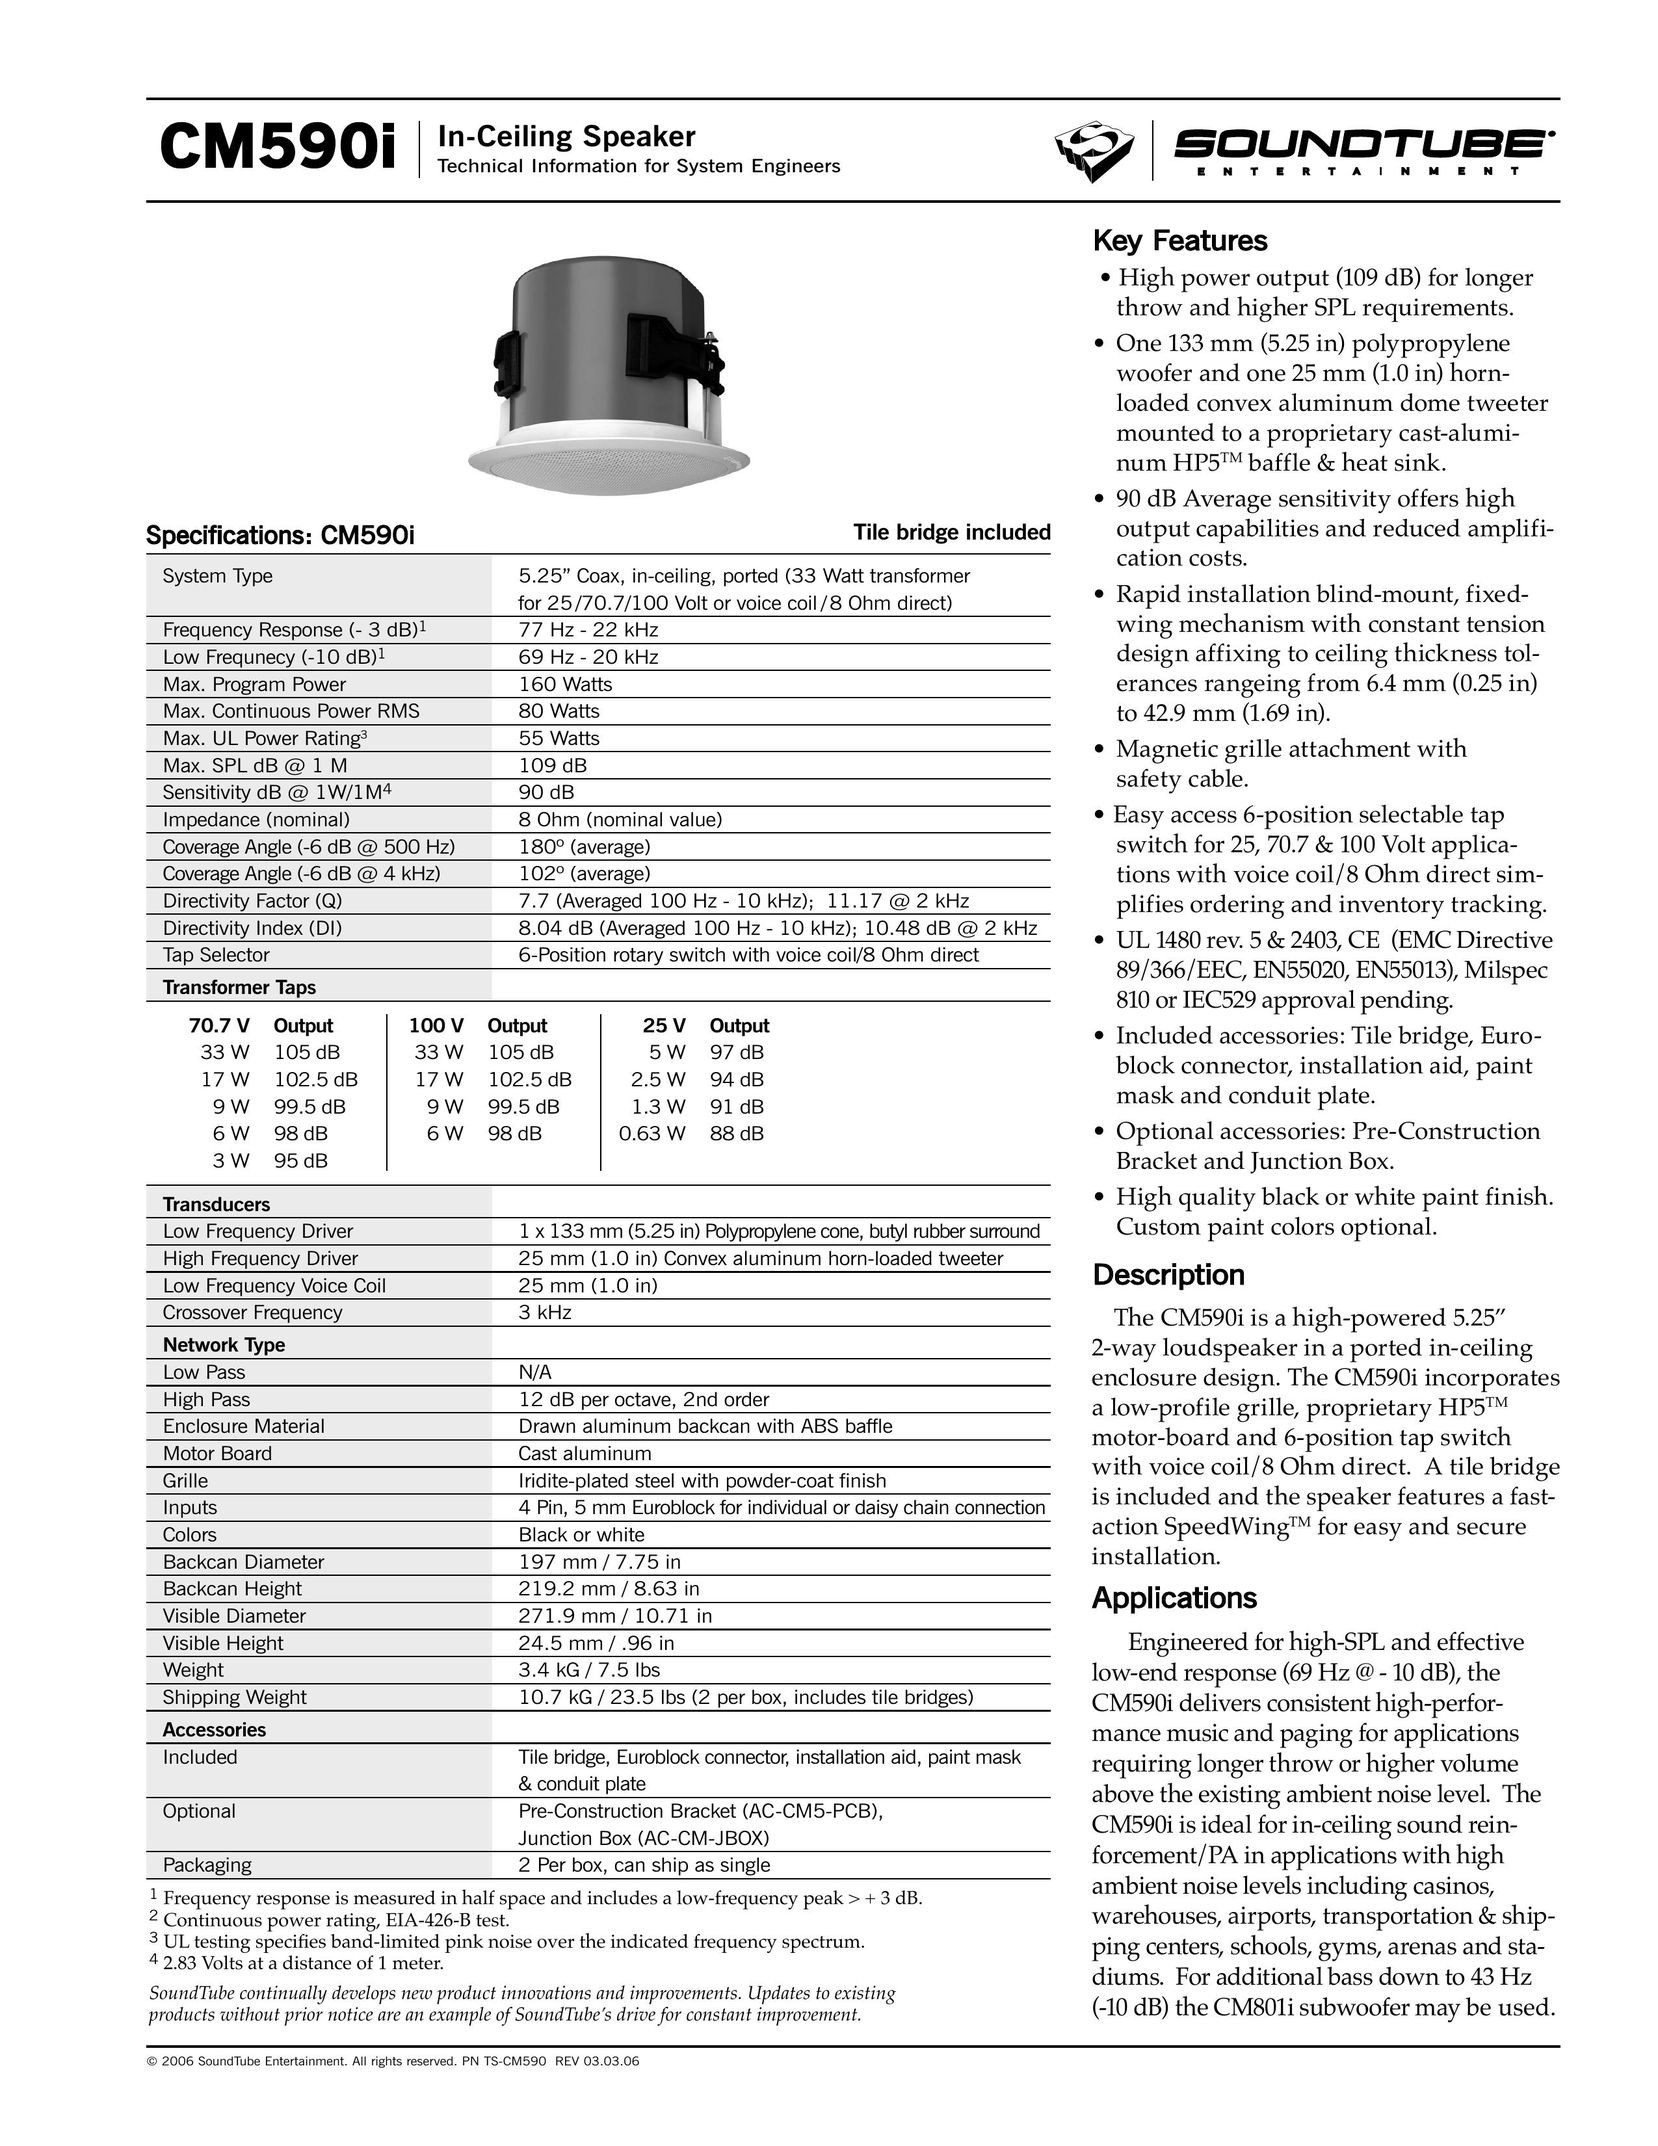 Phase Technology CM590i Speaker User Manual